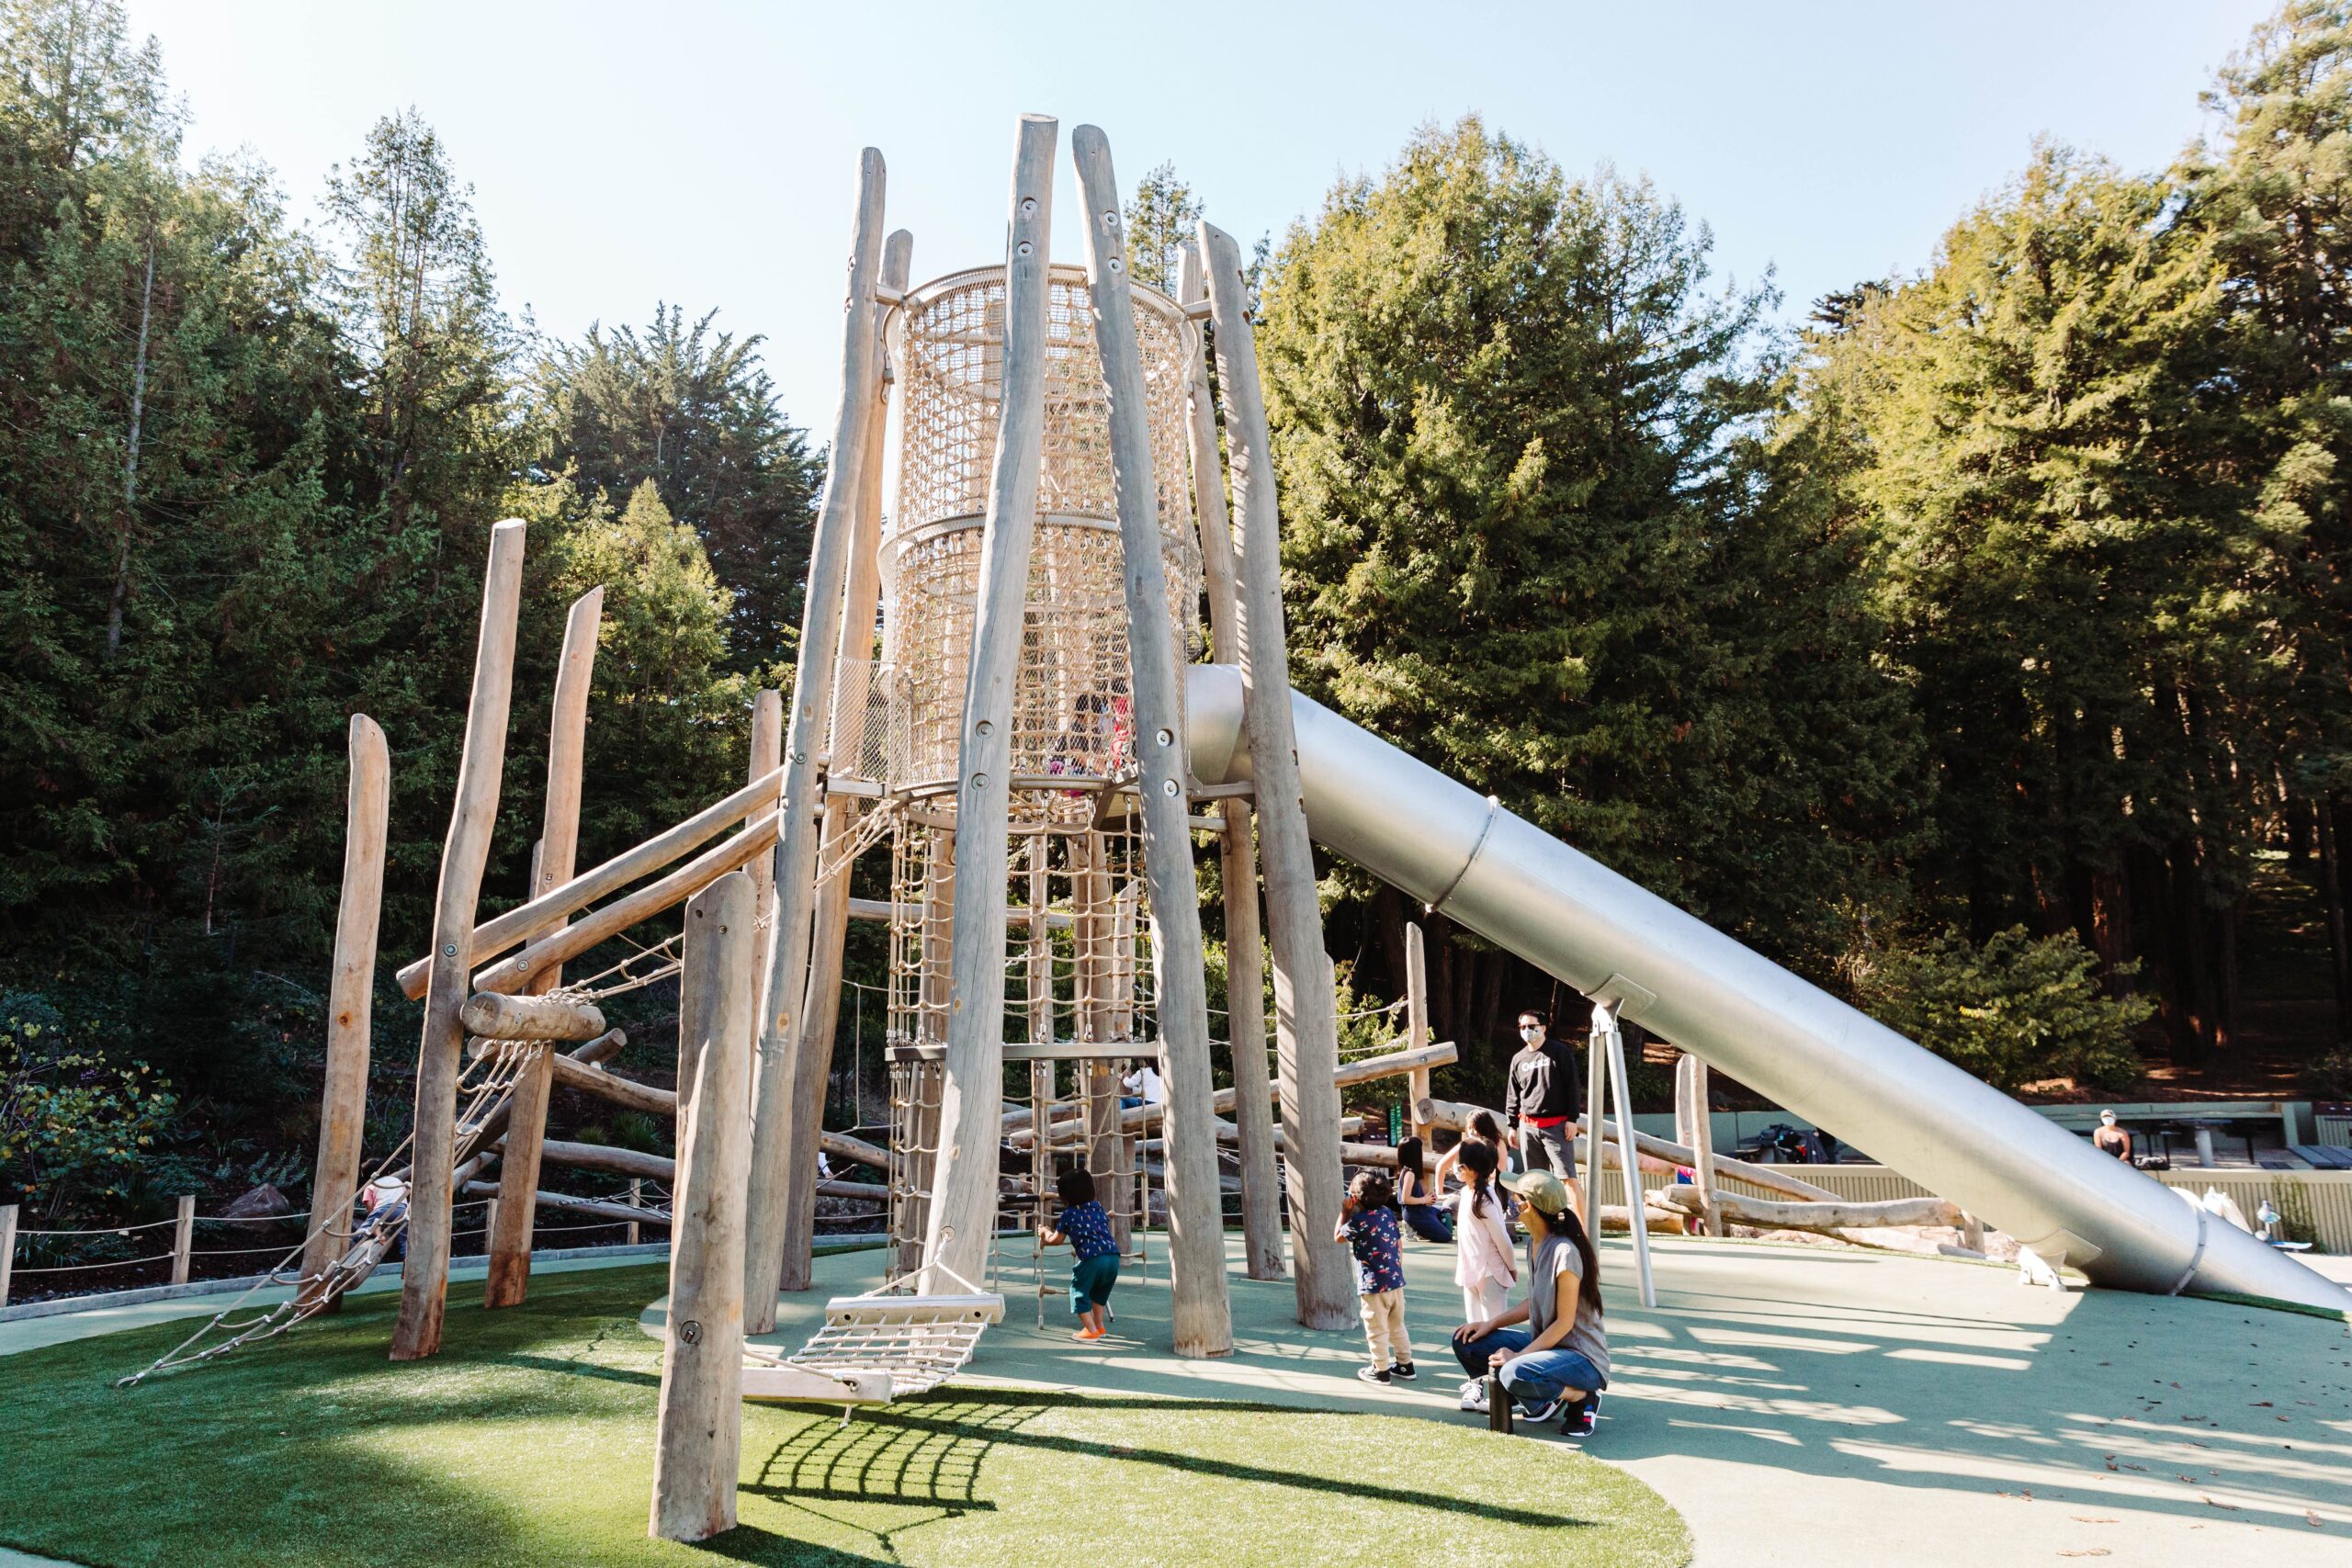 Redwood Grove Playground